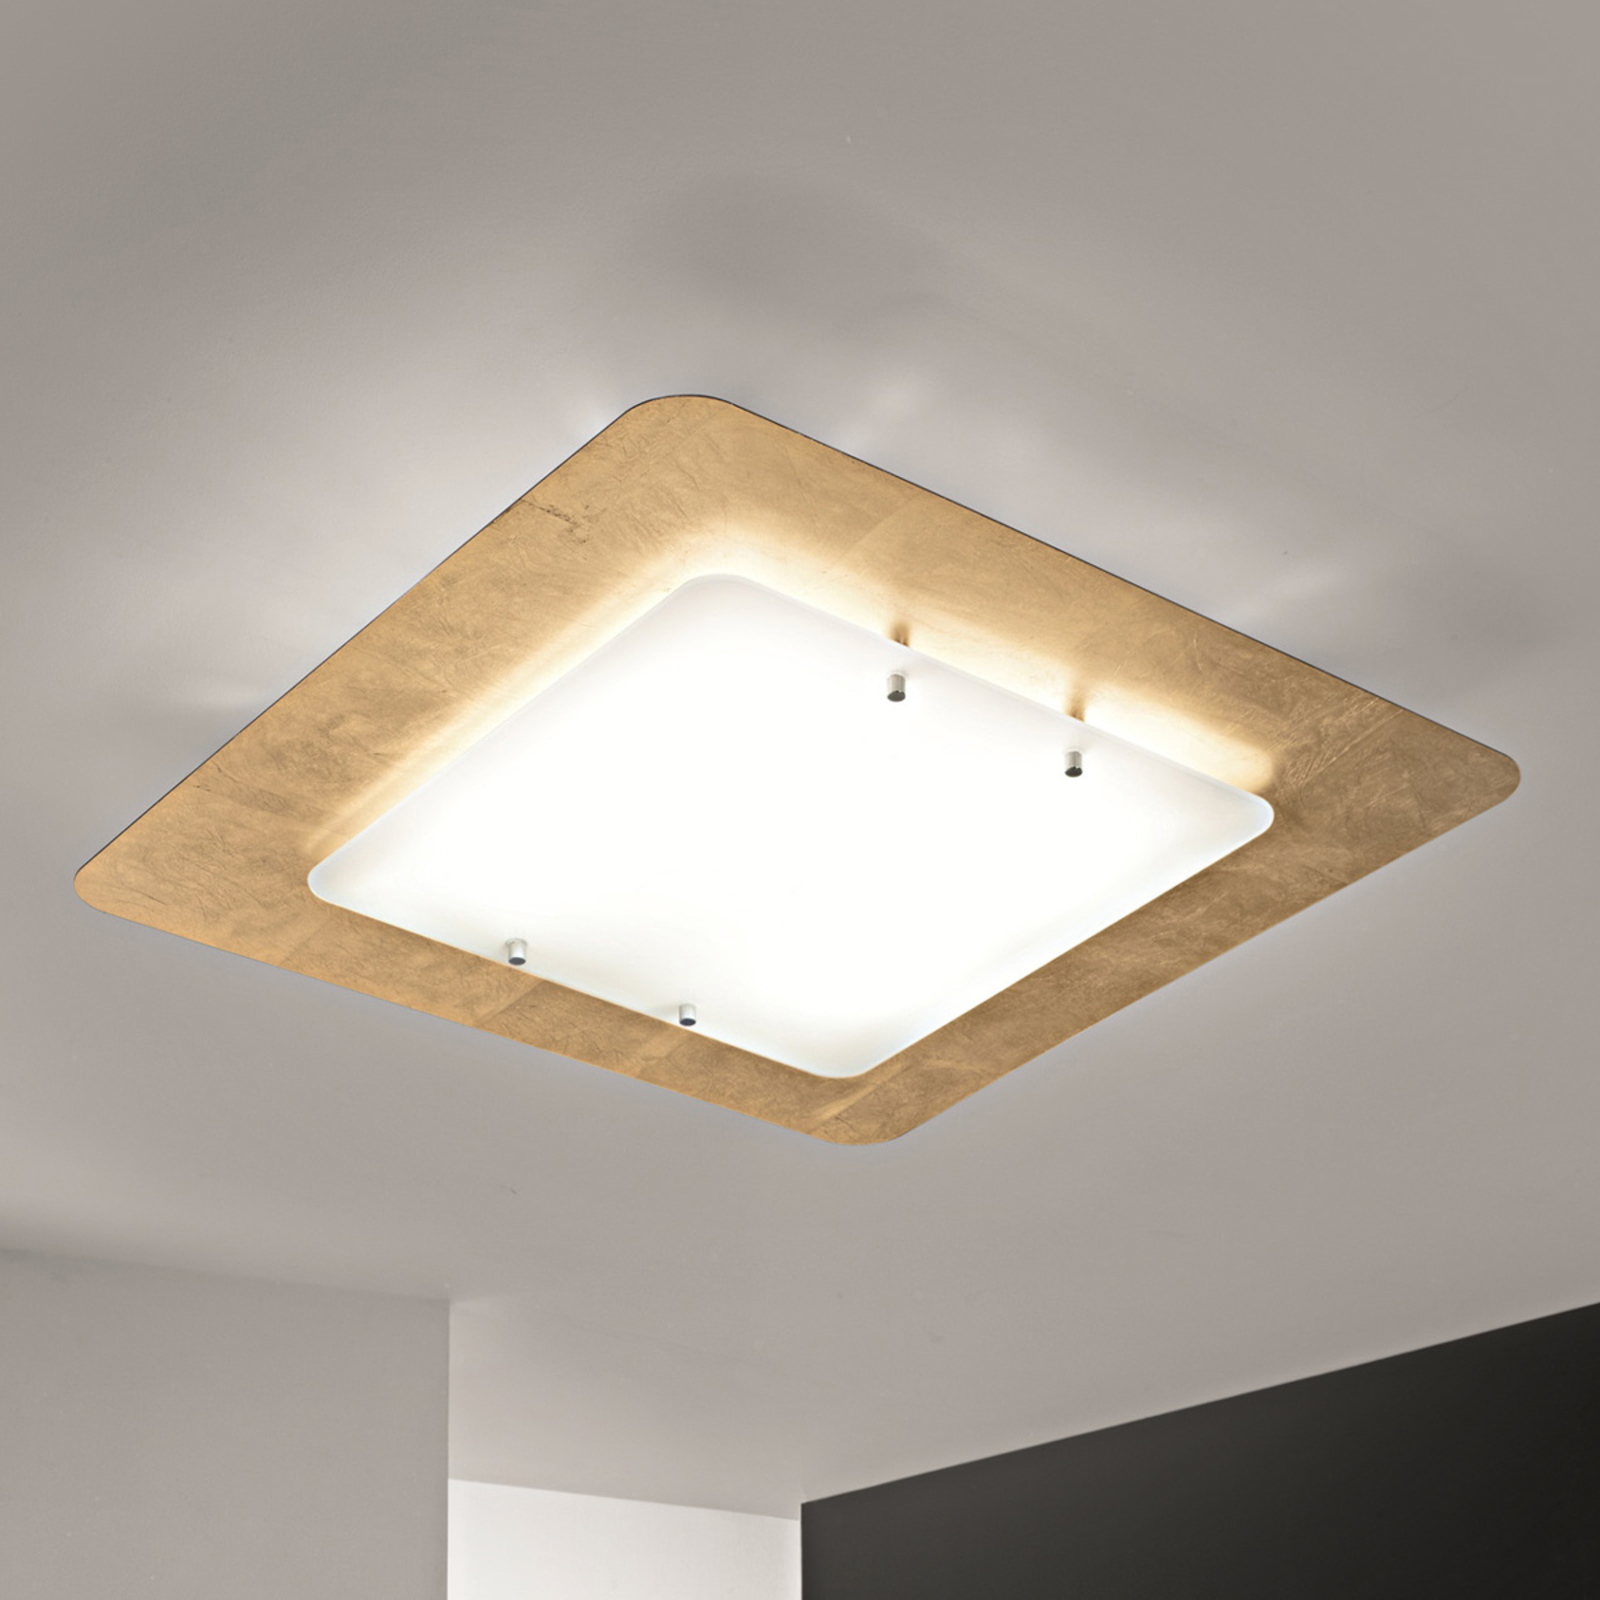 Pop-Up ceiling light, gold leaf frame, 32 x 32 cm